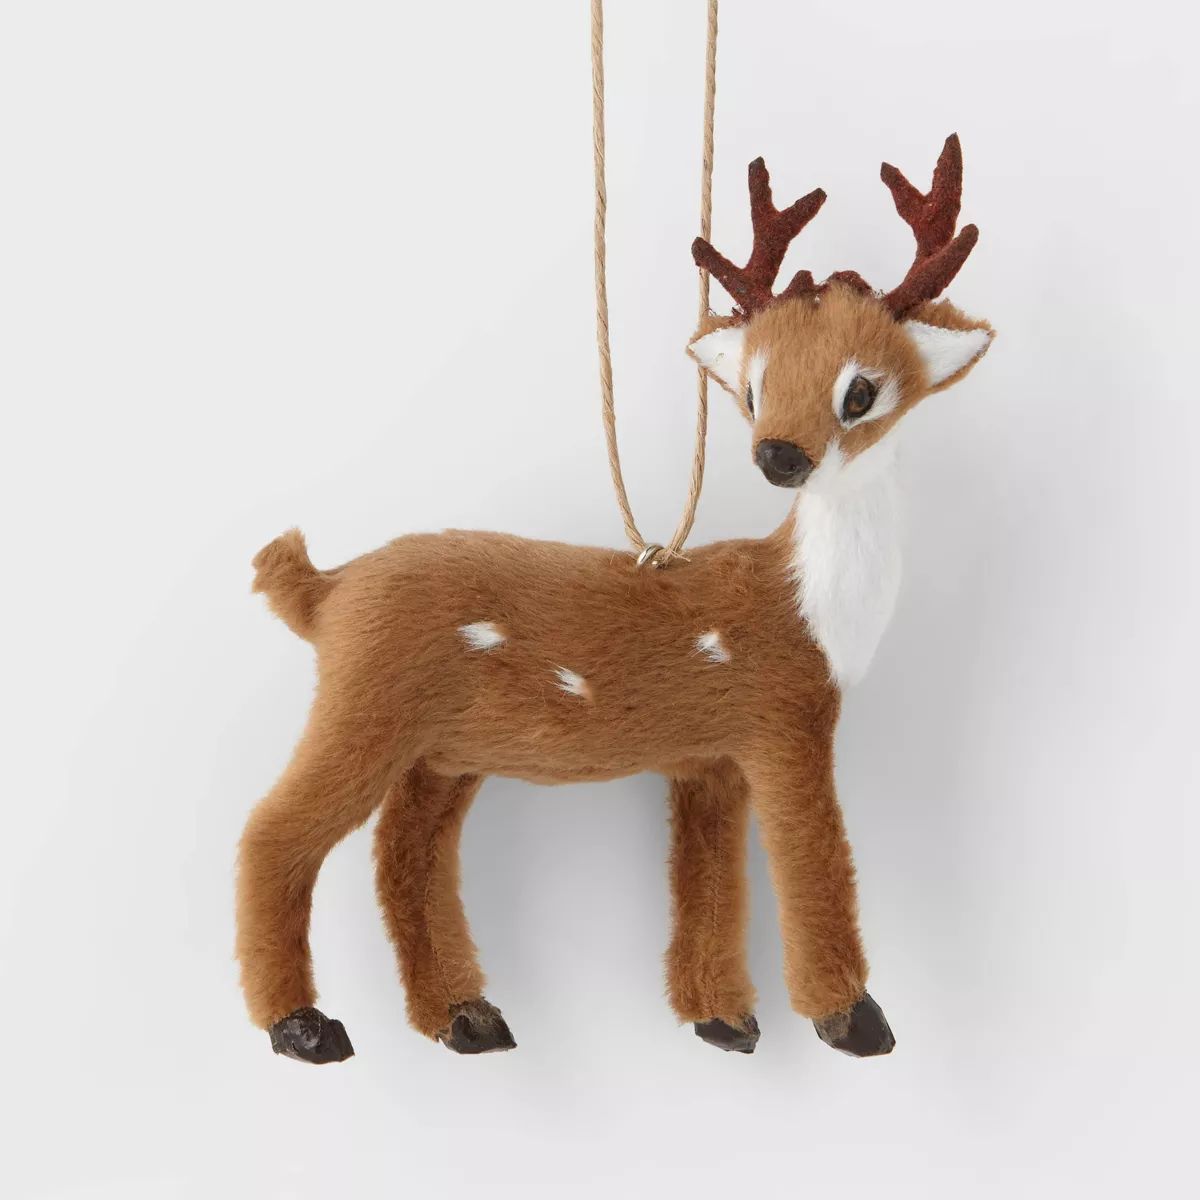 Faux Fur Deer Christmas Tree Ornament Dark Brown with Spots - Wondershop™ | Target